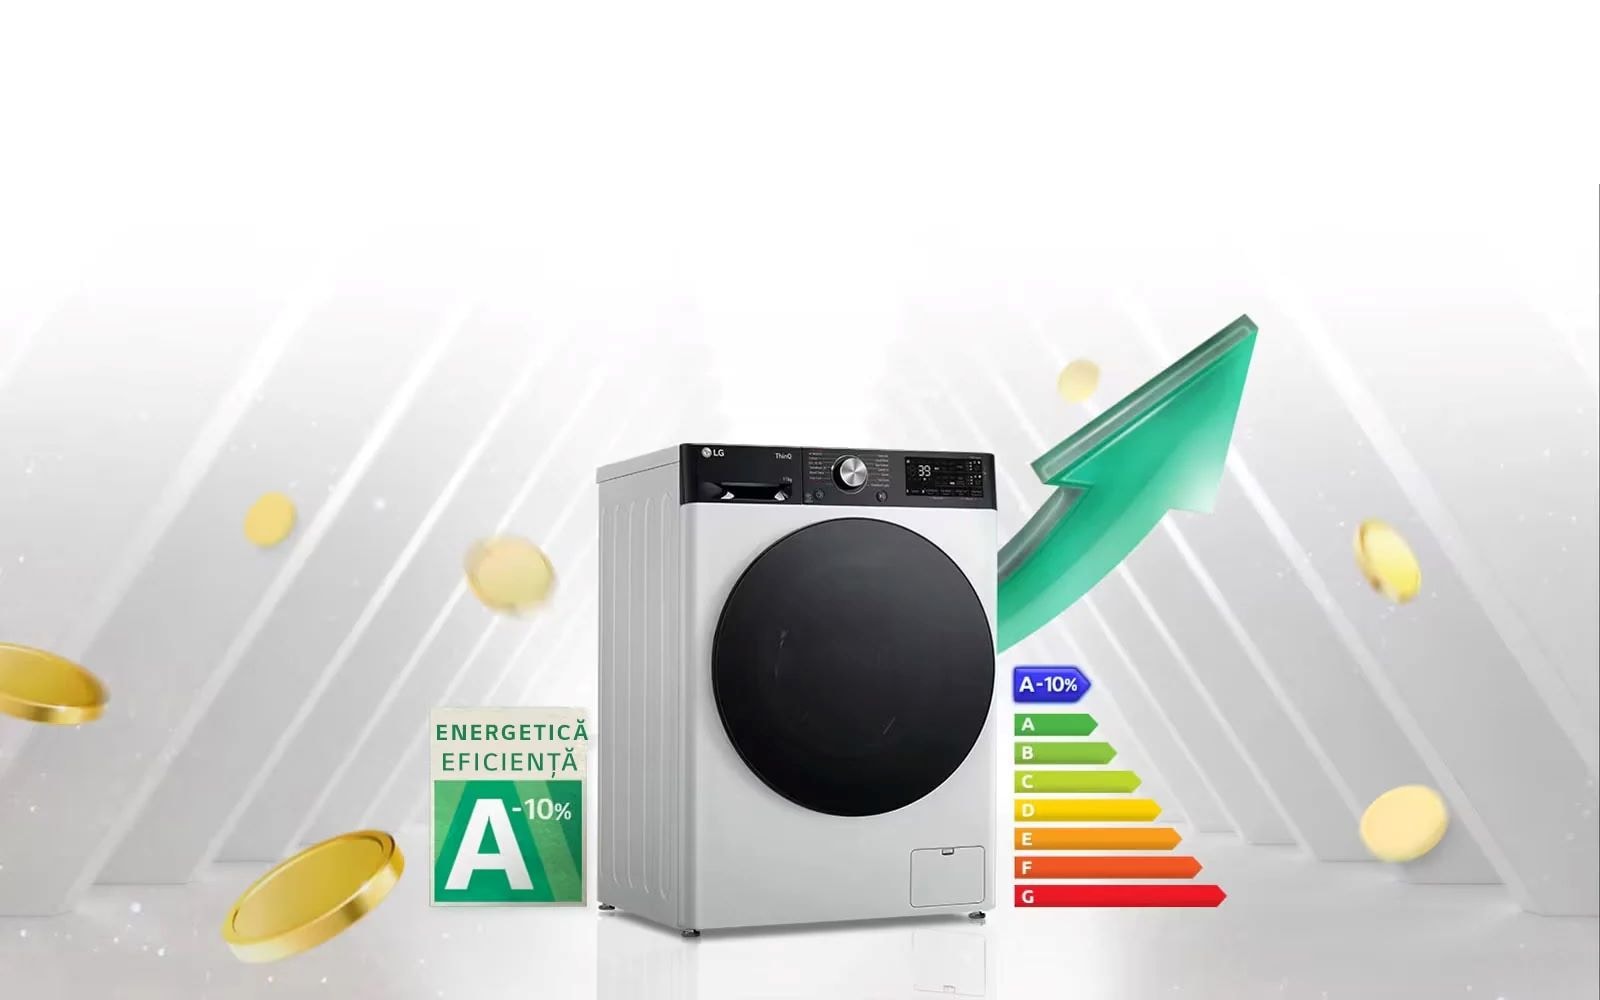  Eticheta de eficiență energetică ridicată A-10% și graficul de evaluare energetică sunt afișate lângă mașina de spălat. În spatele mașinii de spălat, săgeata verde apare îndreptată în sus.